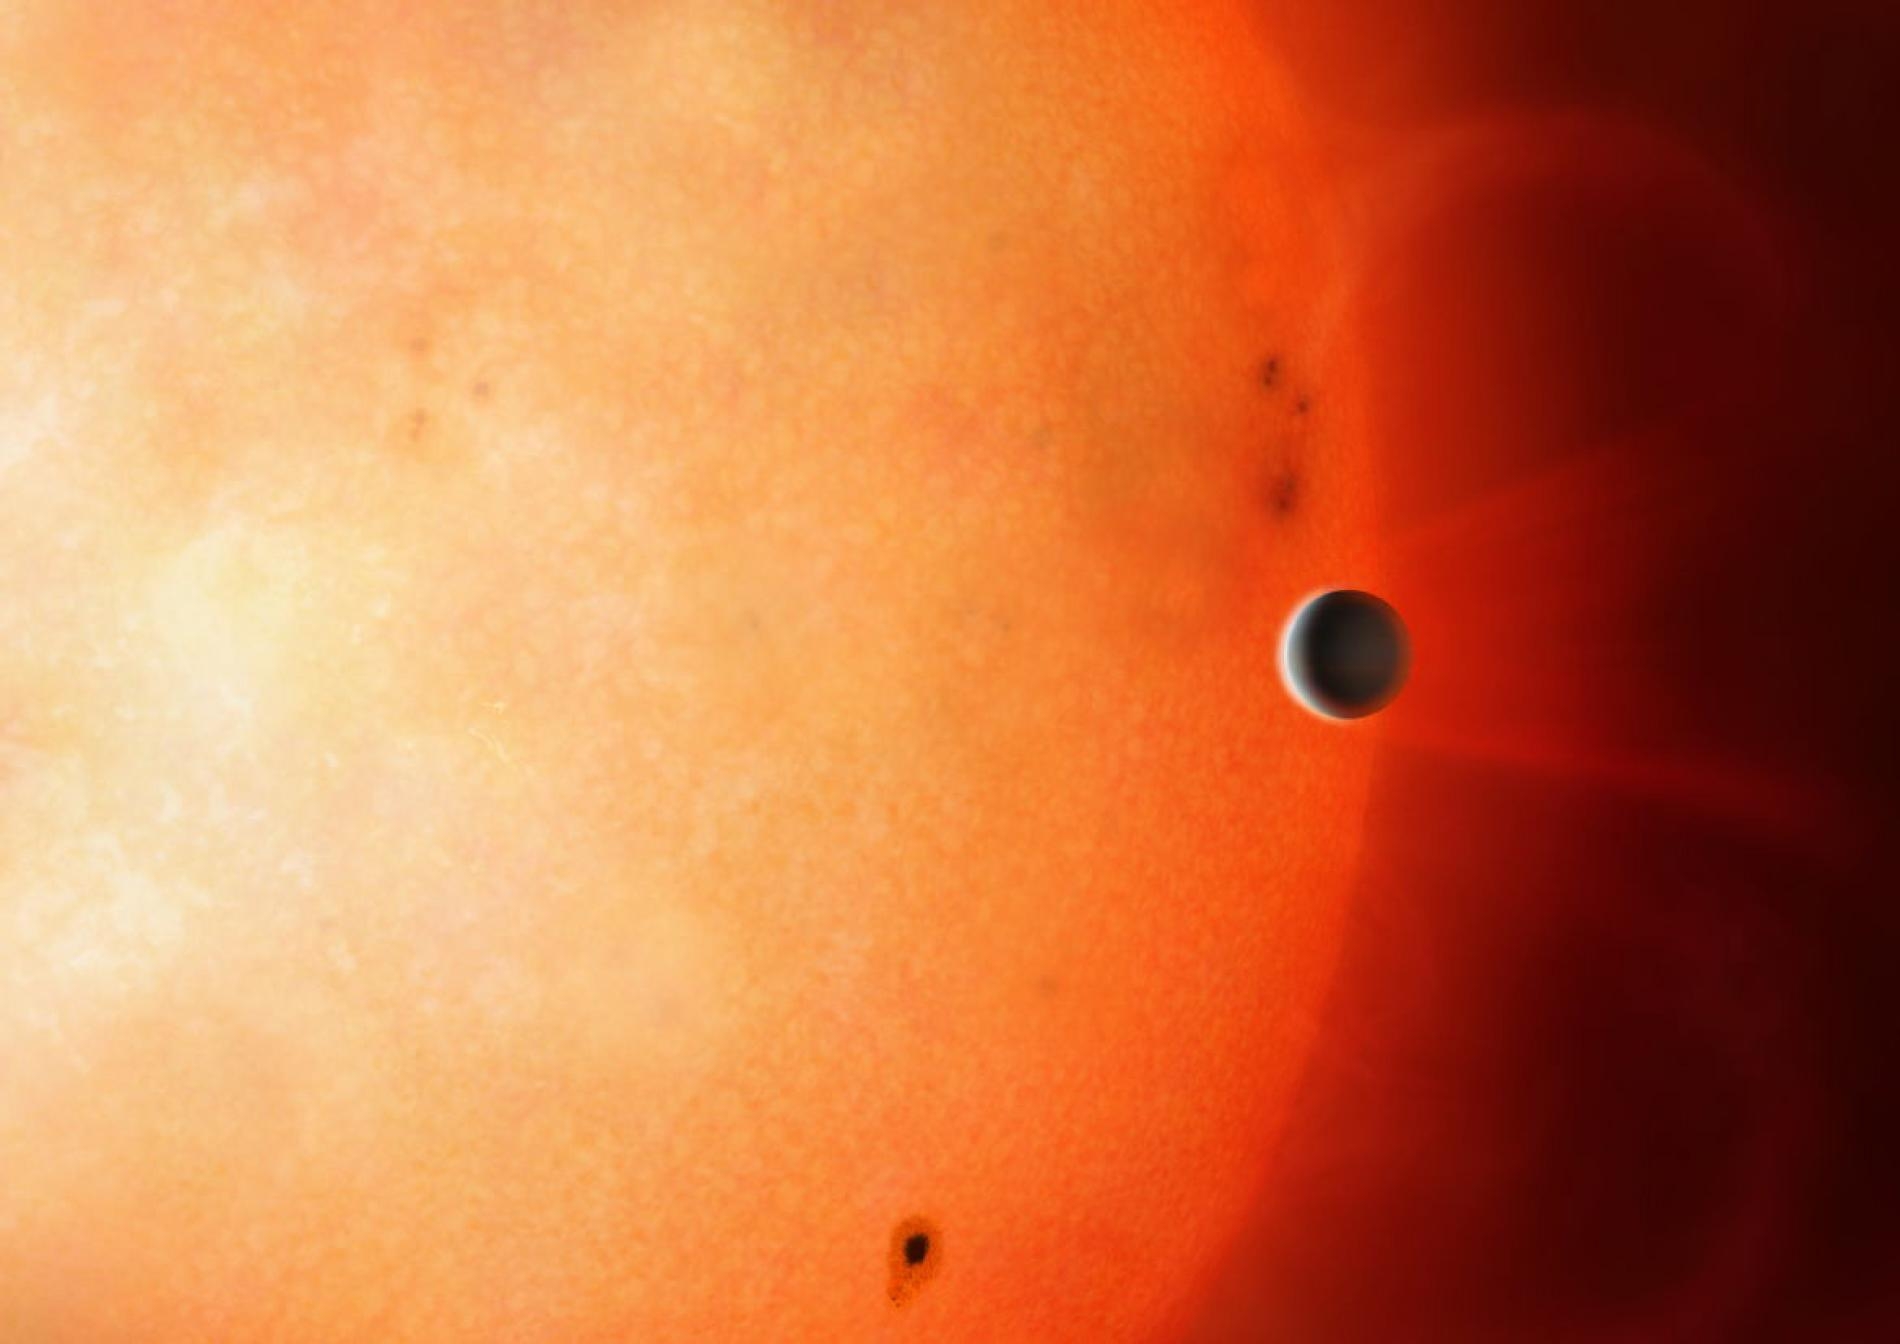 行星TOI-849b的直徑與海王星相當，但密度卻非常高，是顆距離母恆星很近的岩質行星。ILLUSTRATION BY MARK GARLICK, UNIVERSITY OF WARWICK